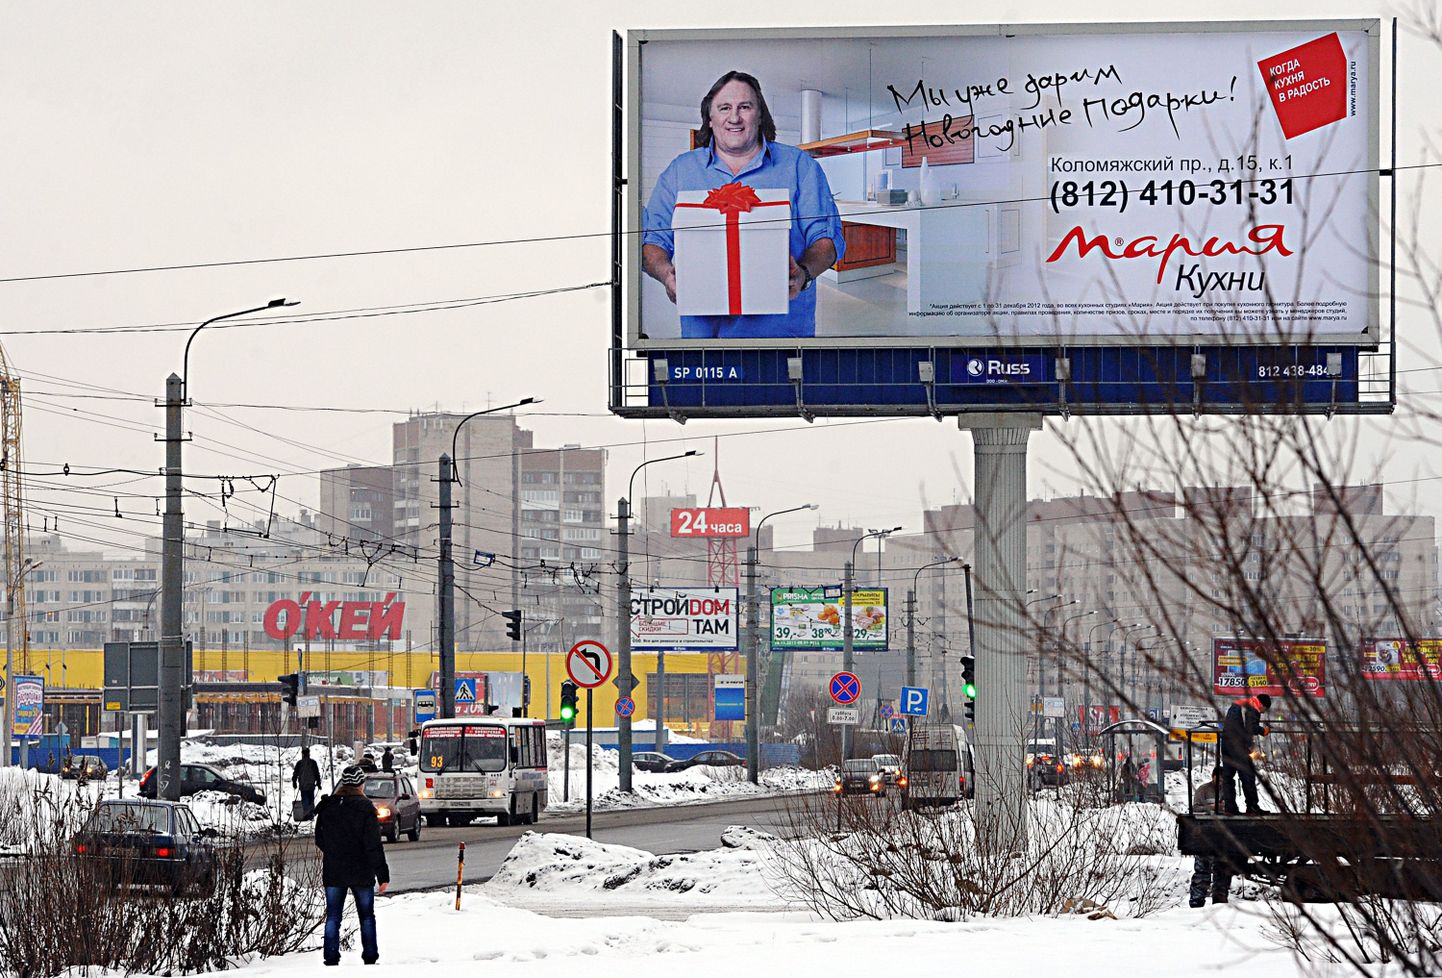 Gérard Depardieu köögimööblit tootva Vene firma Marija Kuhni reklaamis.